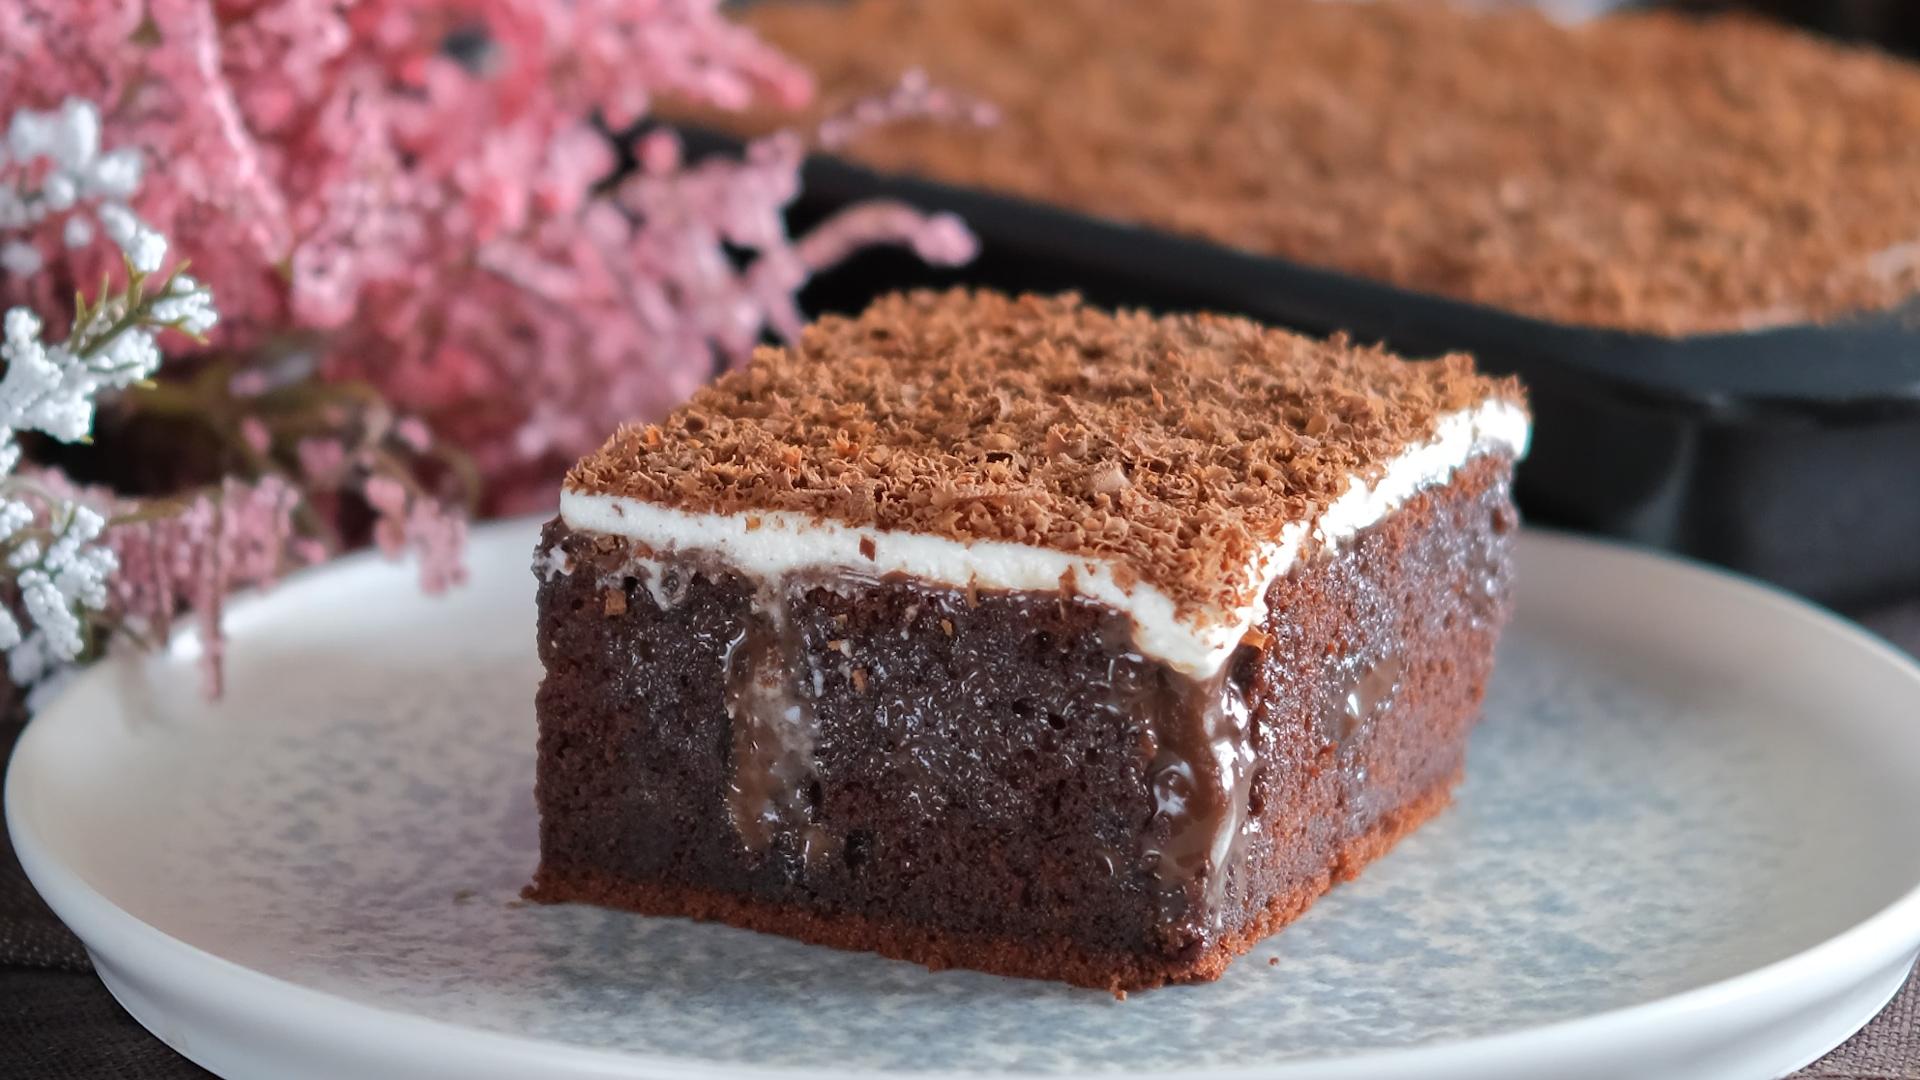 σοκολατόπιτα-με-γλάσο-και-σαντιγί-poke cake-συνταγή-